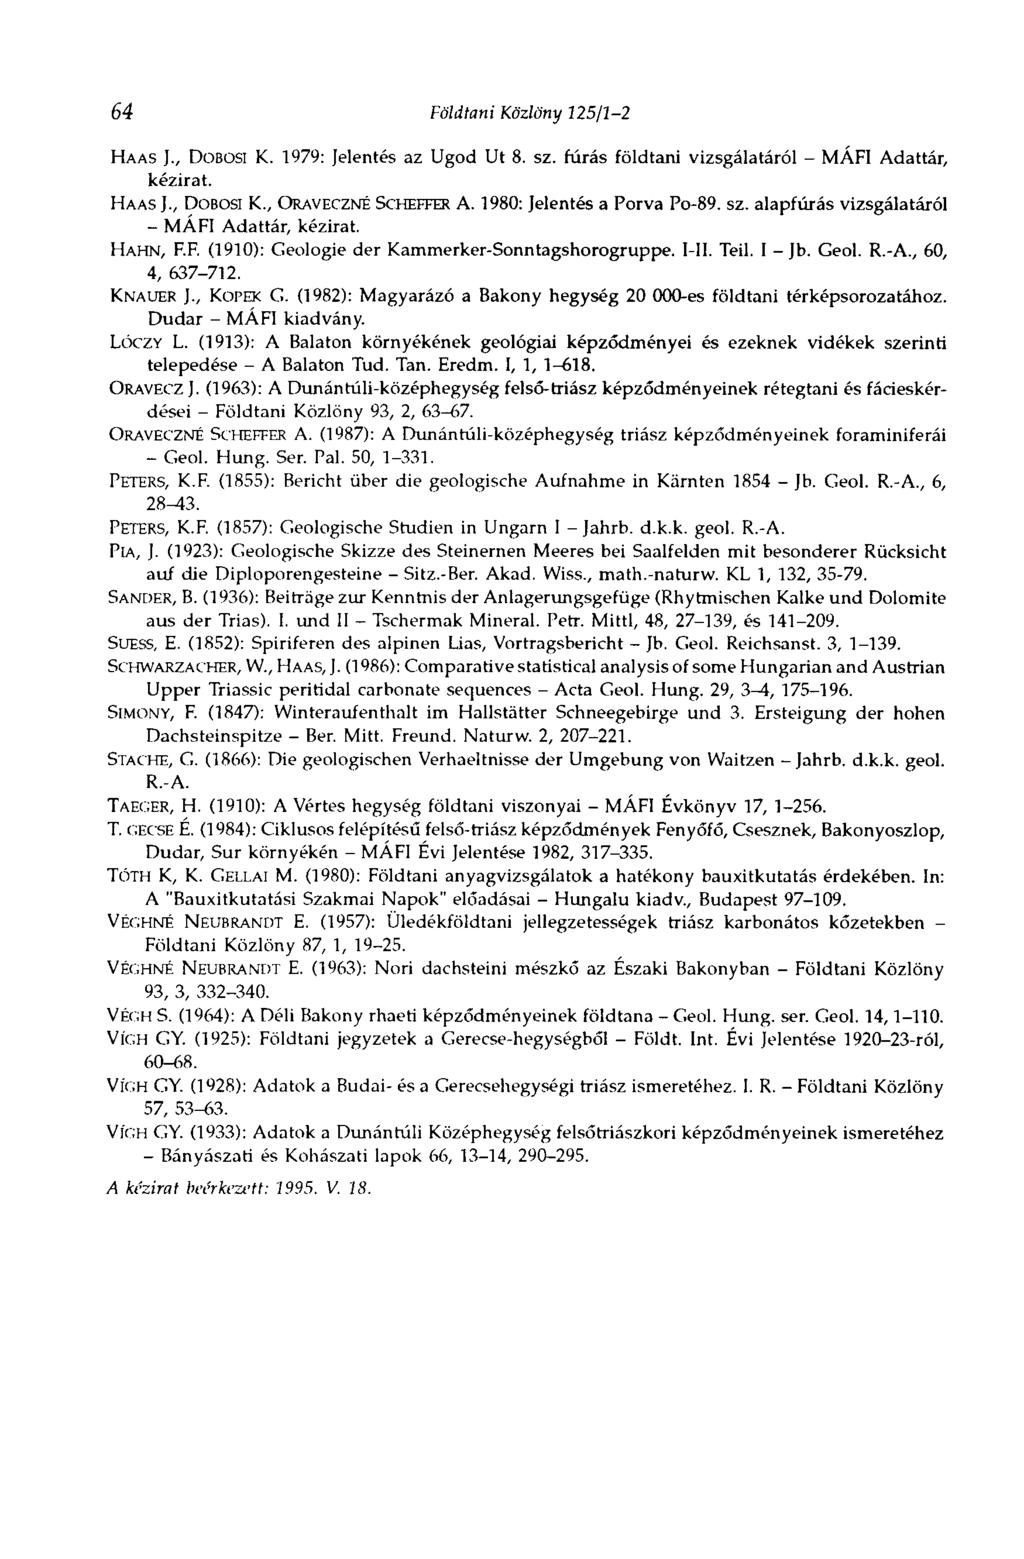 64 Földtani Közlöny 125/1-2 HAAS )., DOBOSI K. 1979: Jelentés az Ugod Ut 8. sz. fúrás földtani vizsgálatáról - MÁFI Adattár, kézirat. HAAS J., DOBOSI K., ORAVECZNÉ SCHEFFER A.